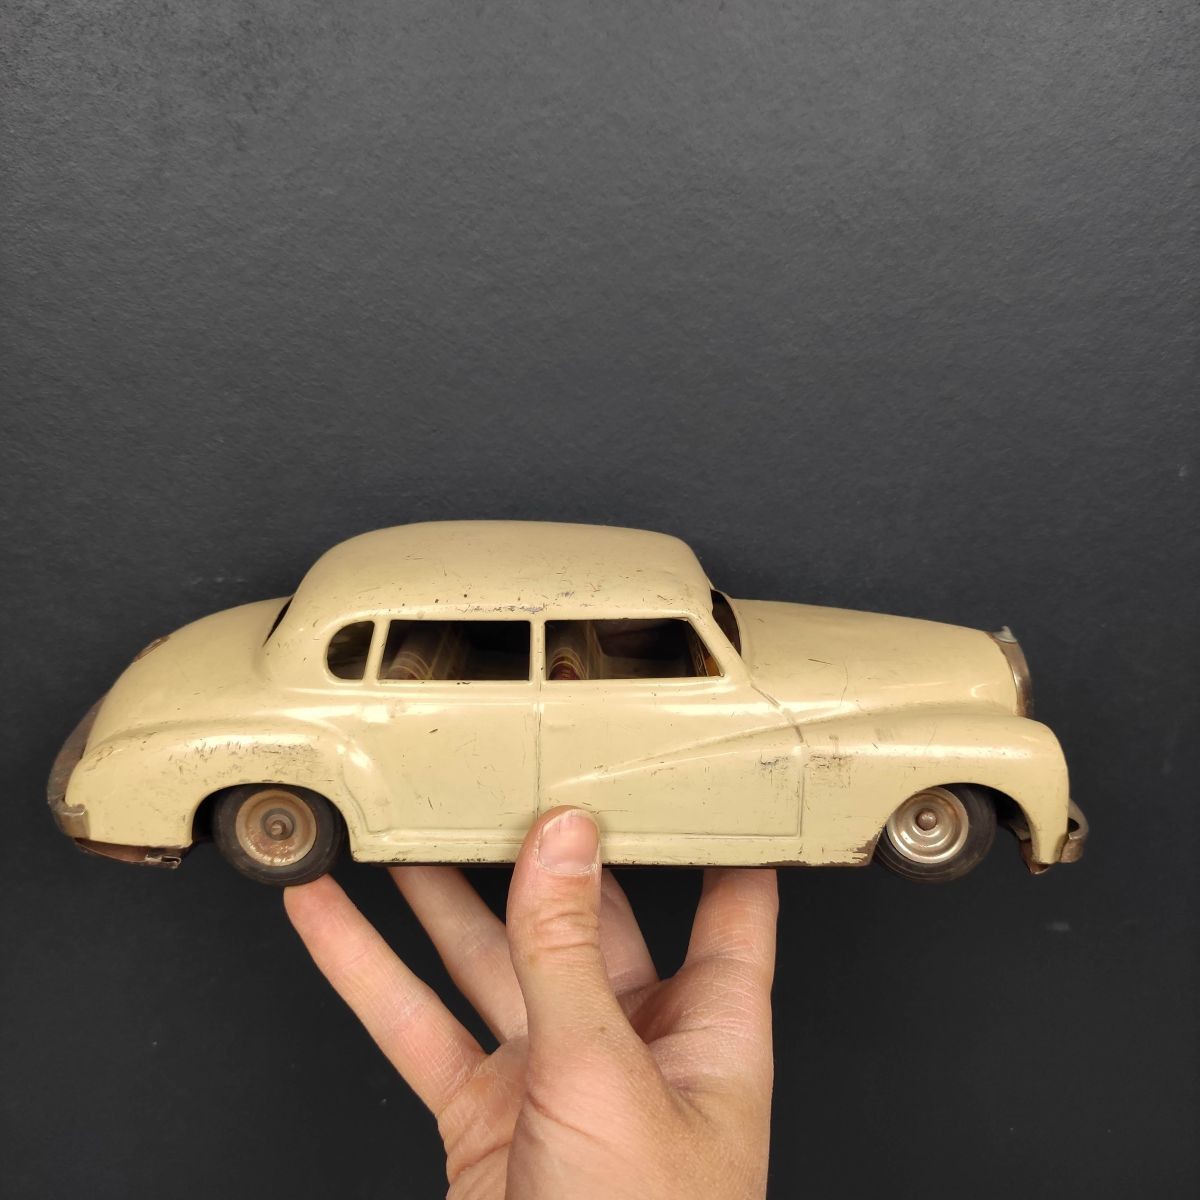 https://www.lepalaisdesbricoles.com/23676-superlarge_default/voiture-miniature-jouet-mecanique-a-cle-western-germany-mercedes-1950.jpg